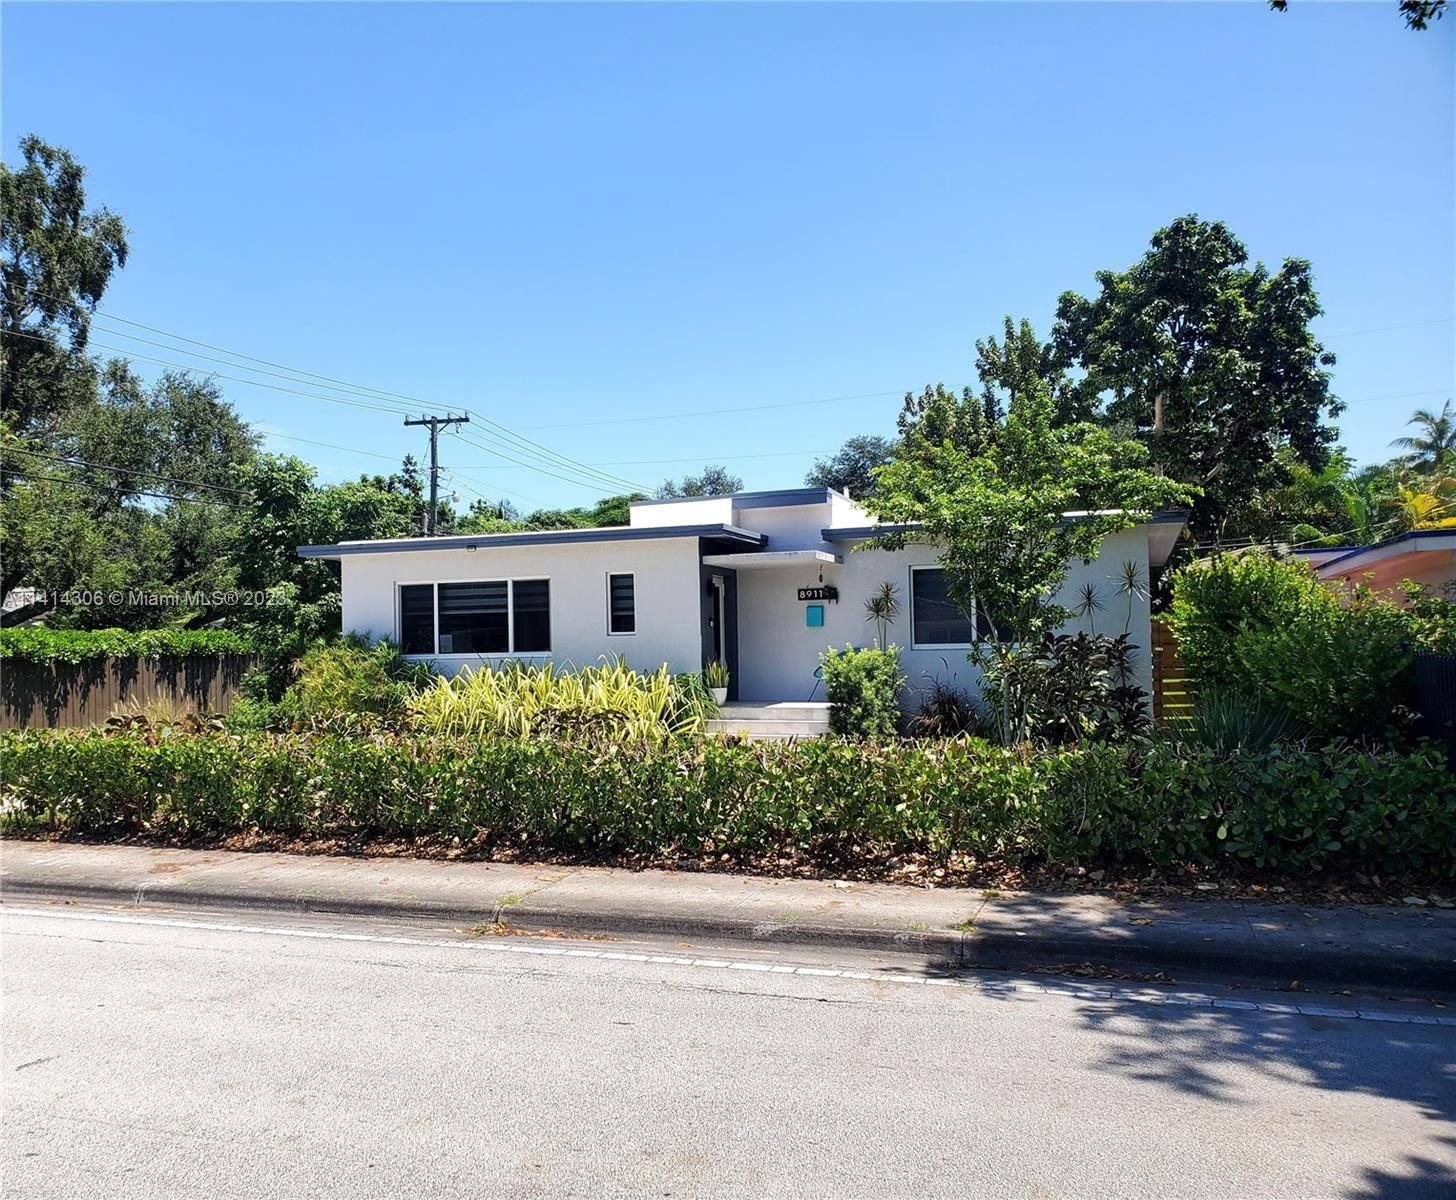 Real estate property located at 8911 Miami Ave, Miami-Dade County, El Portal, FL